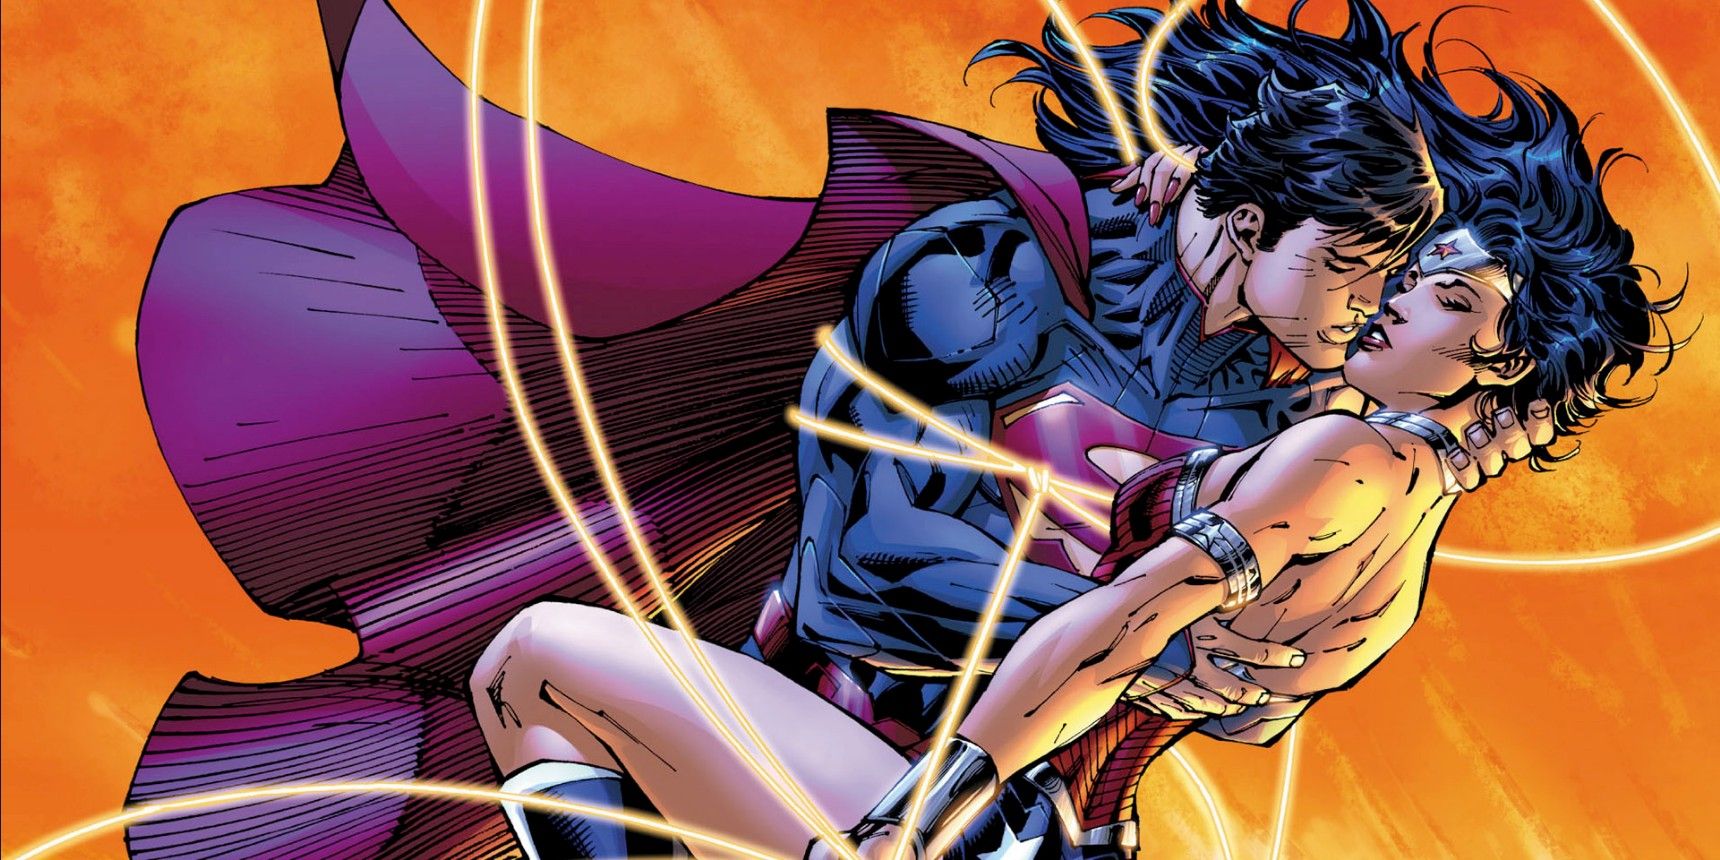 “Ese día cambió las cosas”: el romance de Superman y Wonder Woman terminó debido a una decisión en una fracción de segundo